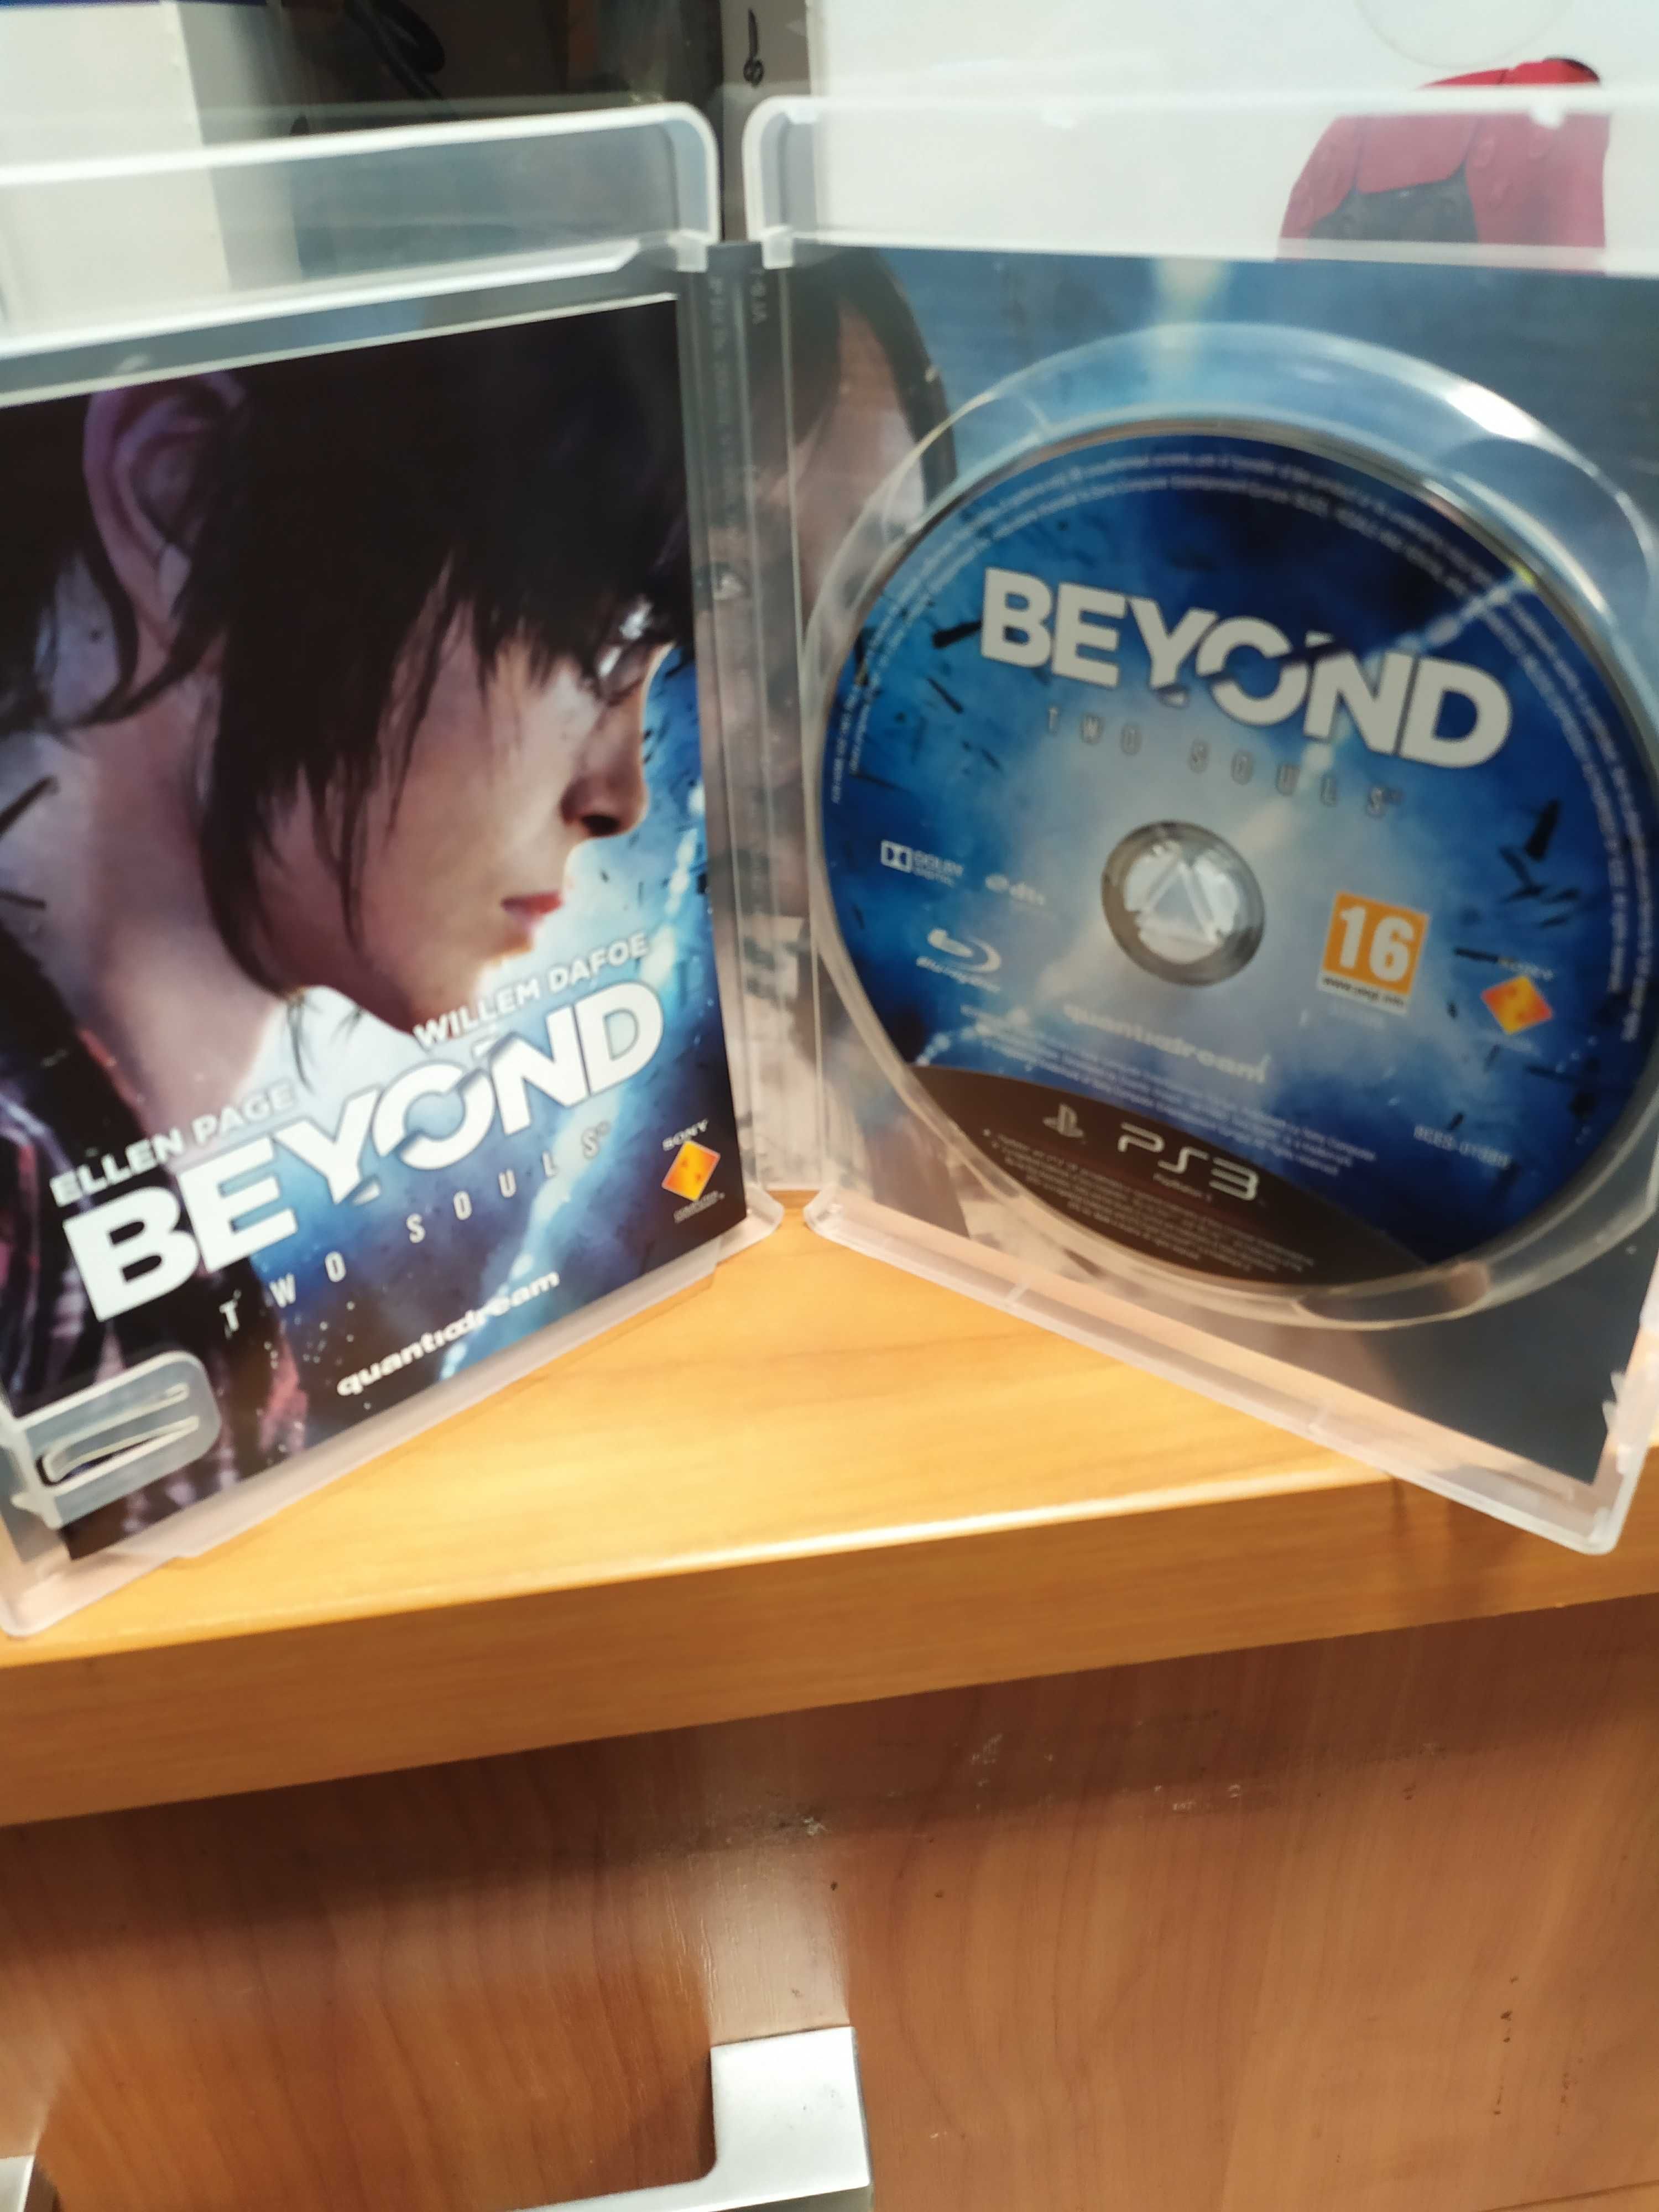 Beyond: Dwie dusze PS3 ANG Sklep Wysyłka Wymiana